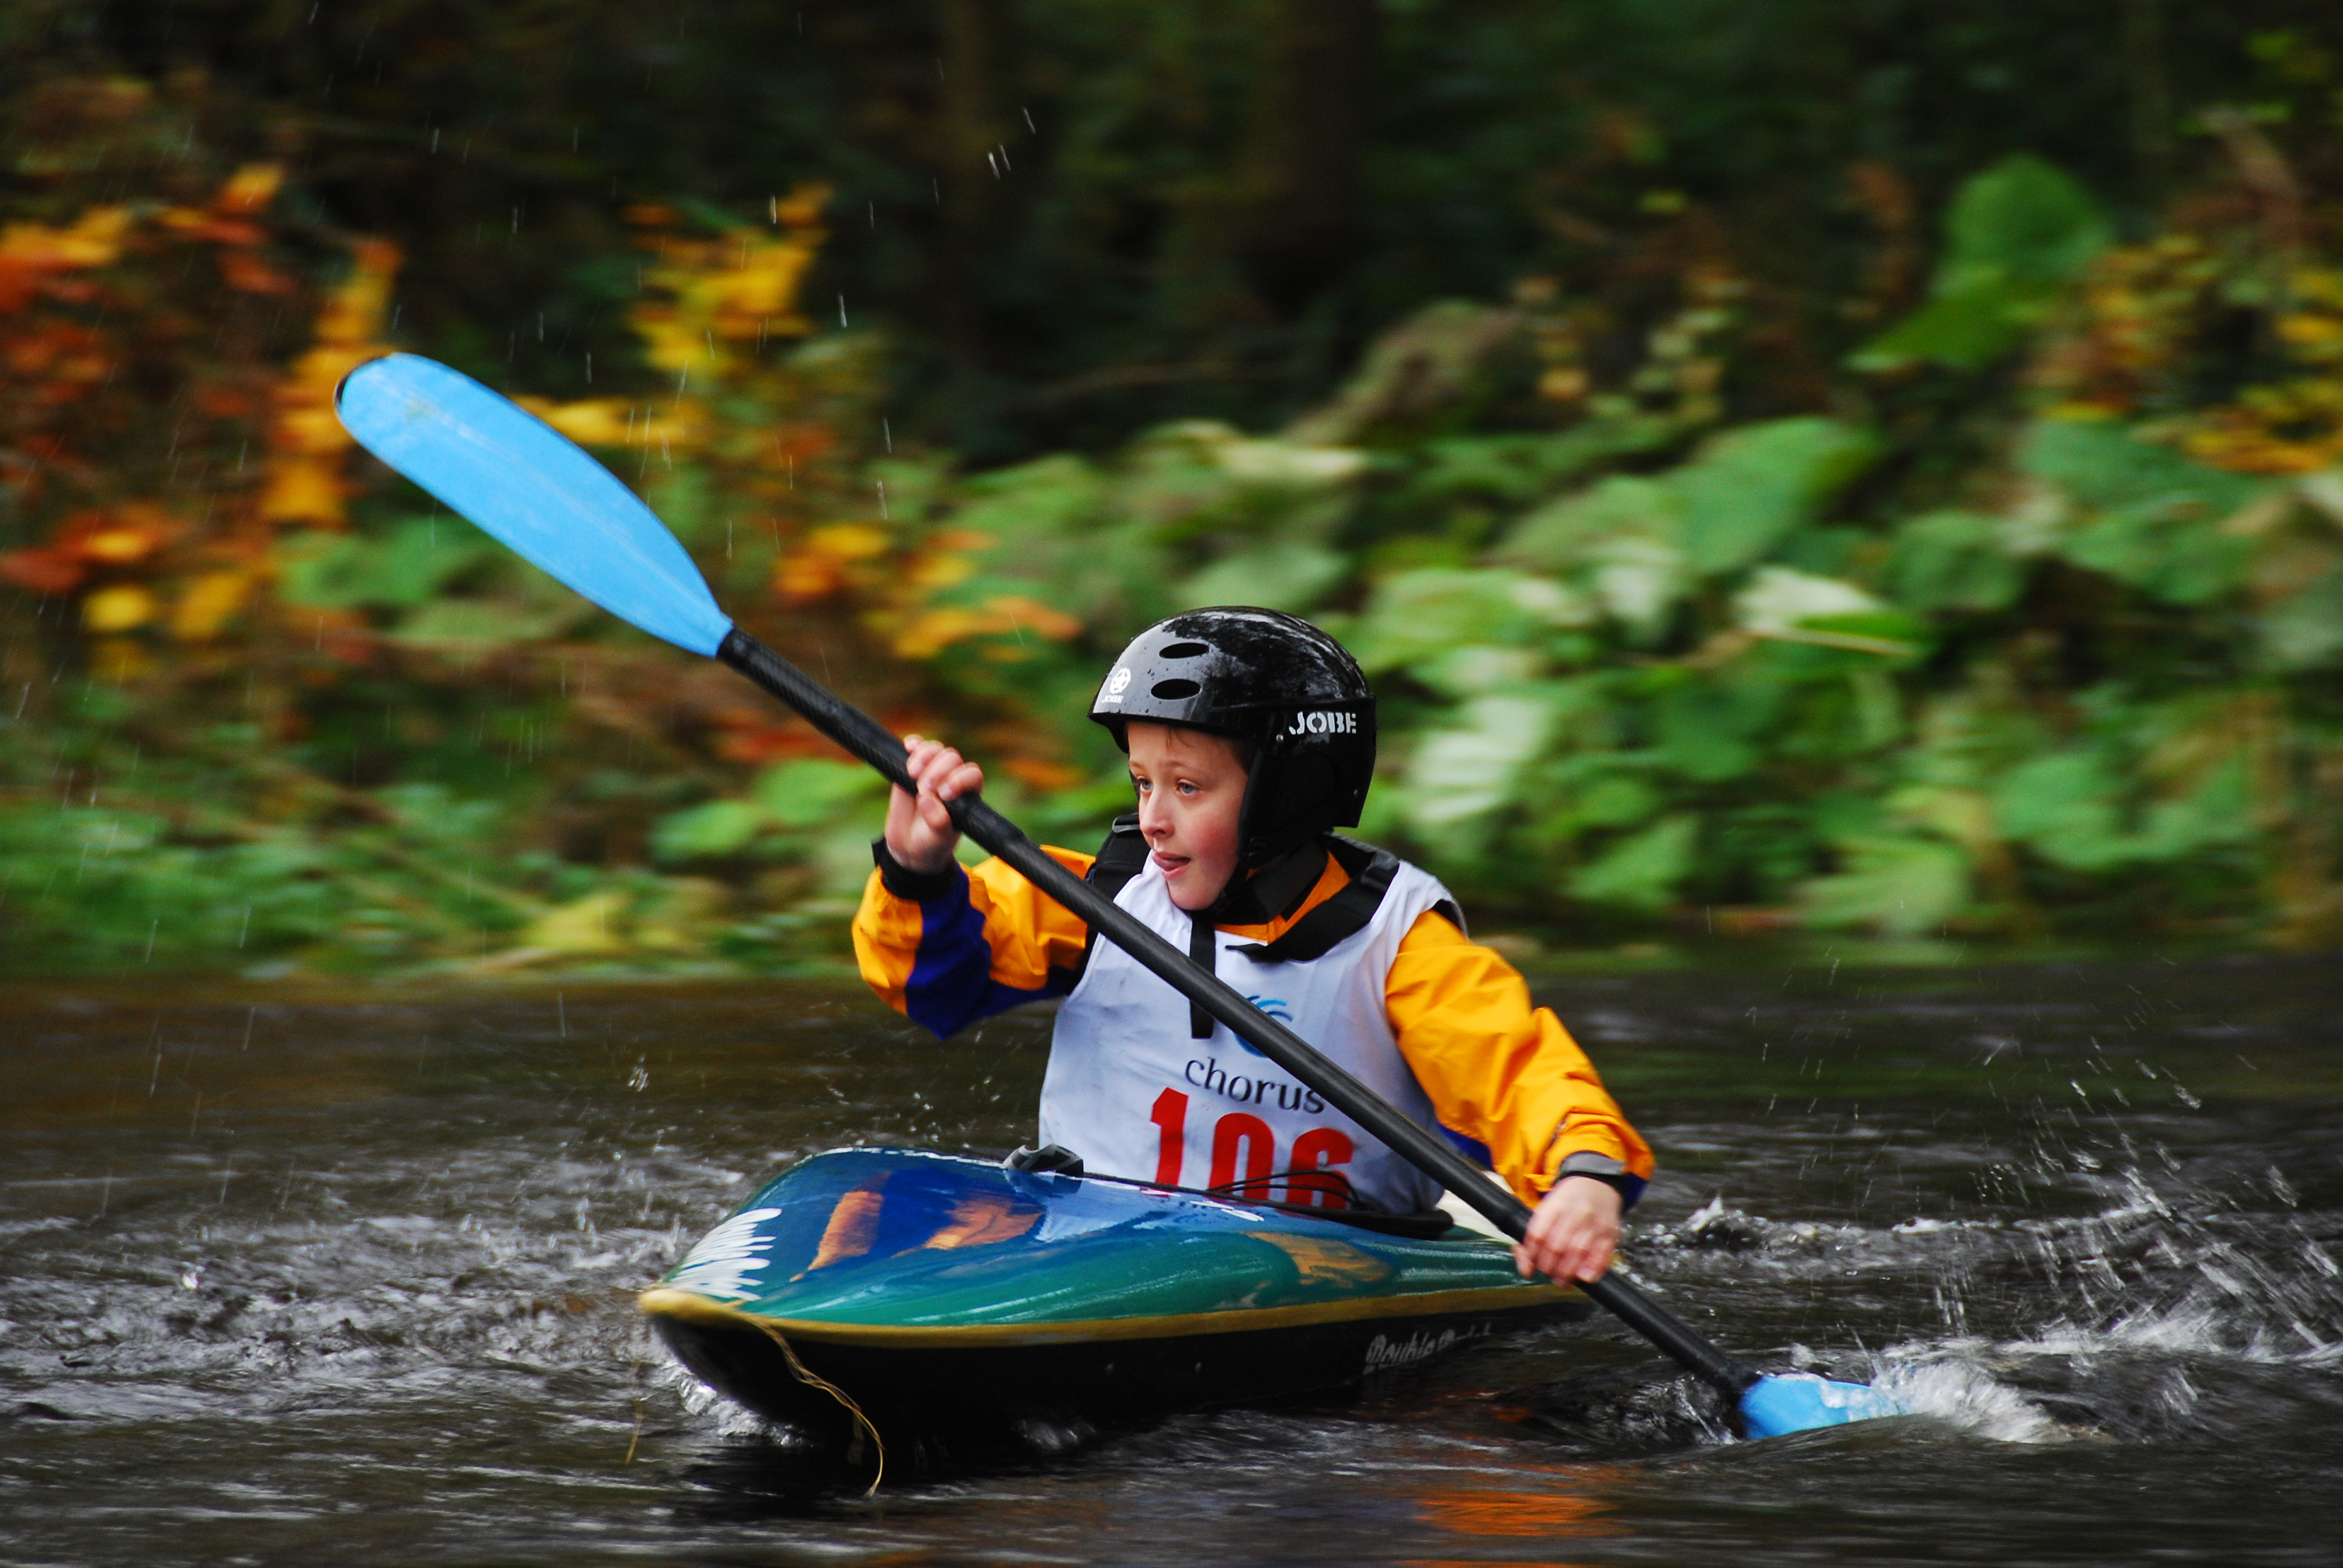 kayak for kids